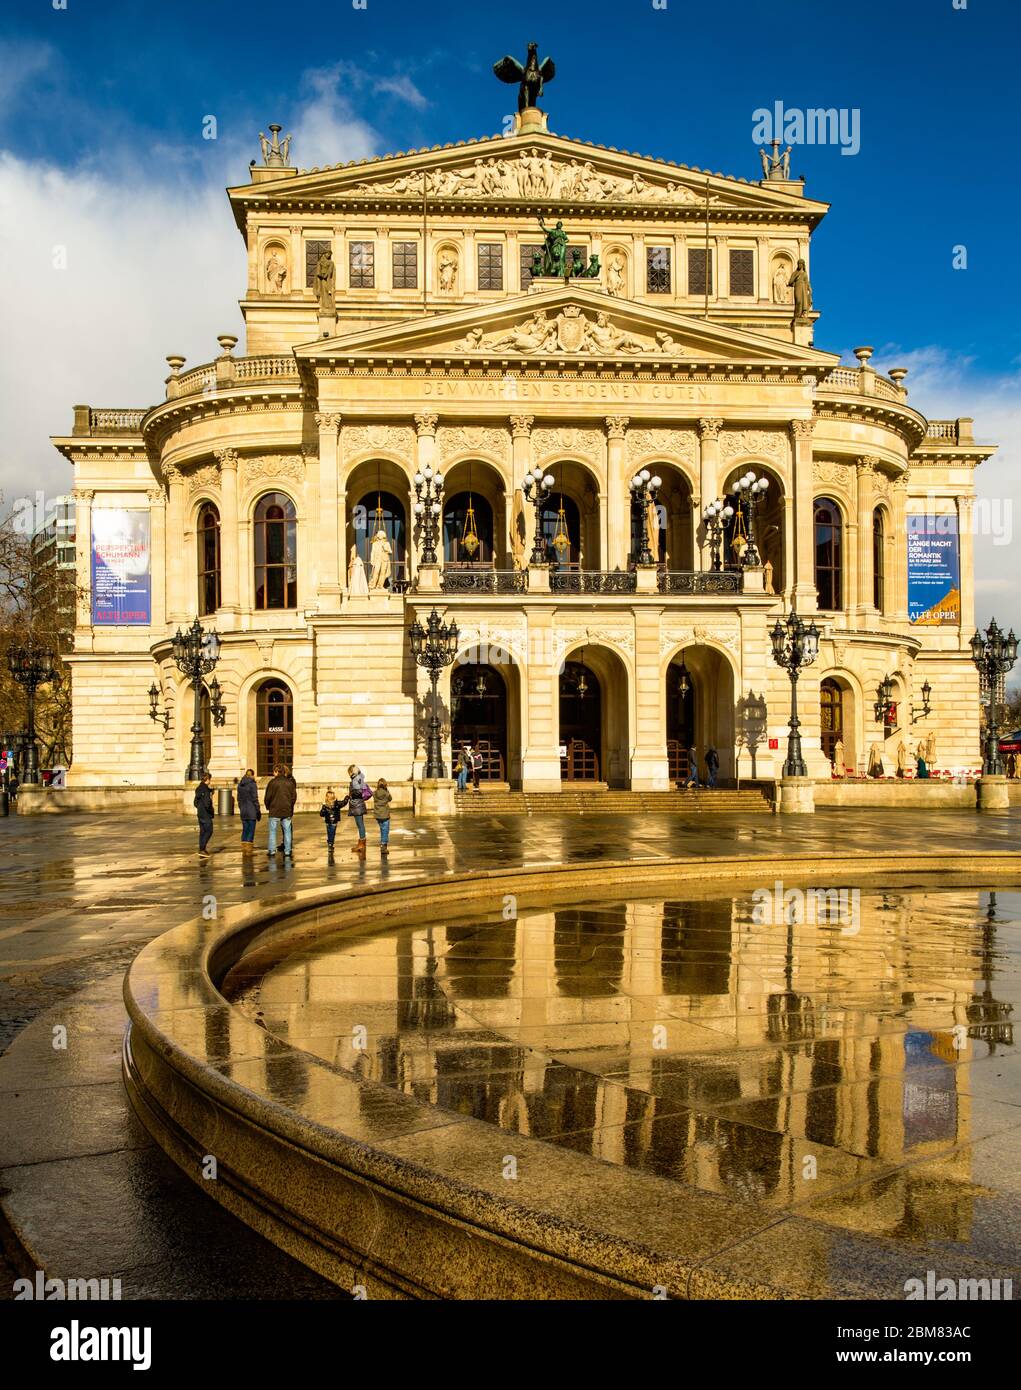 Die Alte Oper, Frankfurt am Main, mit Spiegelung in nassgepflasterter Umgebung. Es ist das ursprüngliche Opernhaus in Frankfurt und ist heute ein Konzertsaal. Stockfoto